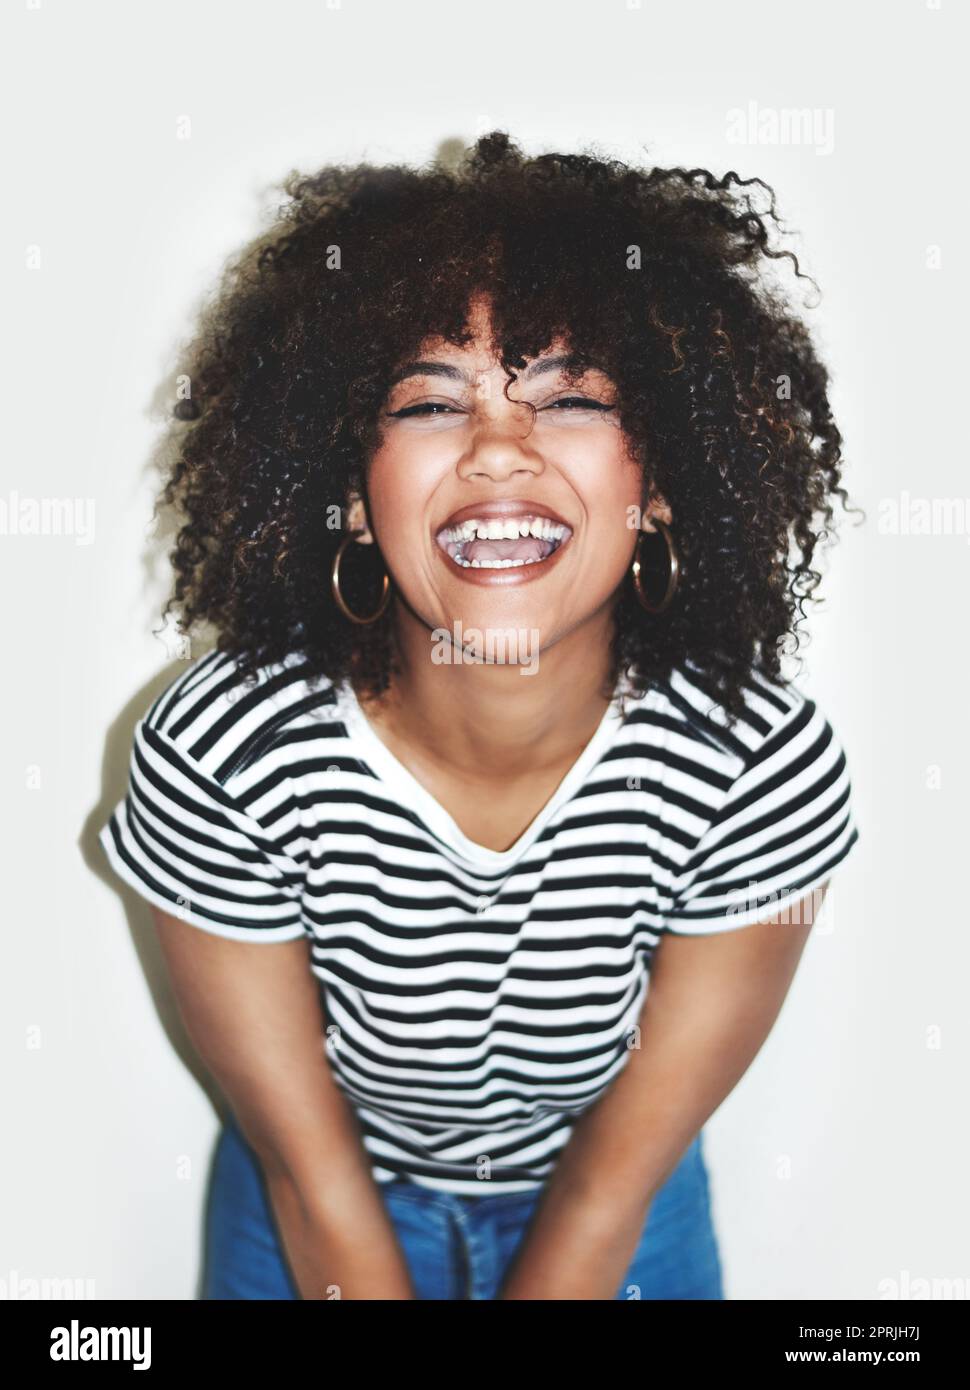 Scoppiare di felicità. Foto studio di una giovane donna felice che si posa su uno sfondo grigio. Foto Stock